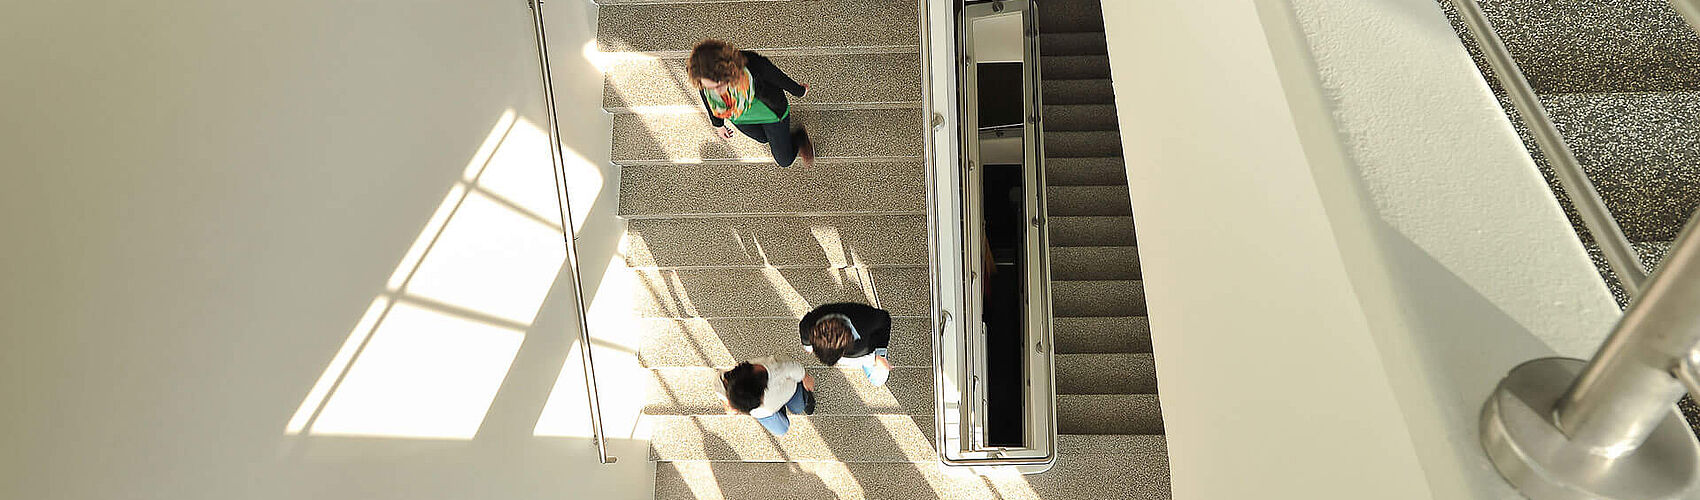 Studierende im Treppenhaus des Stadtgebäudes